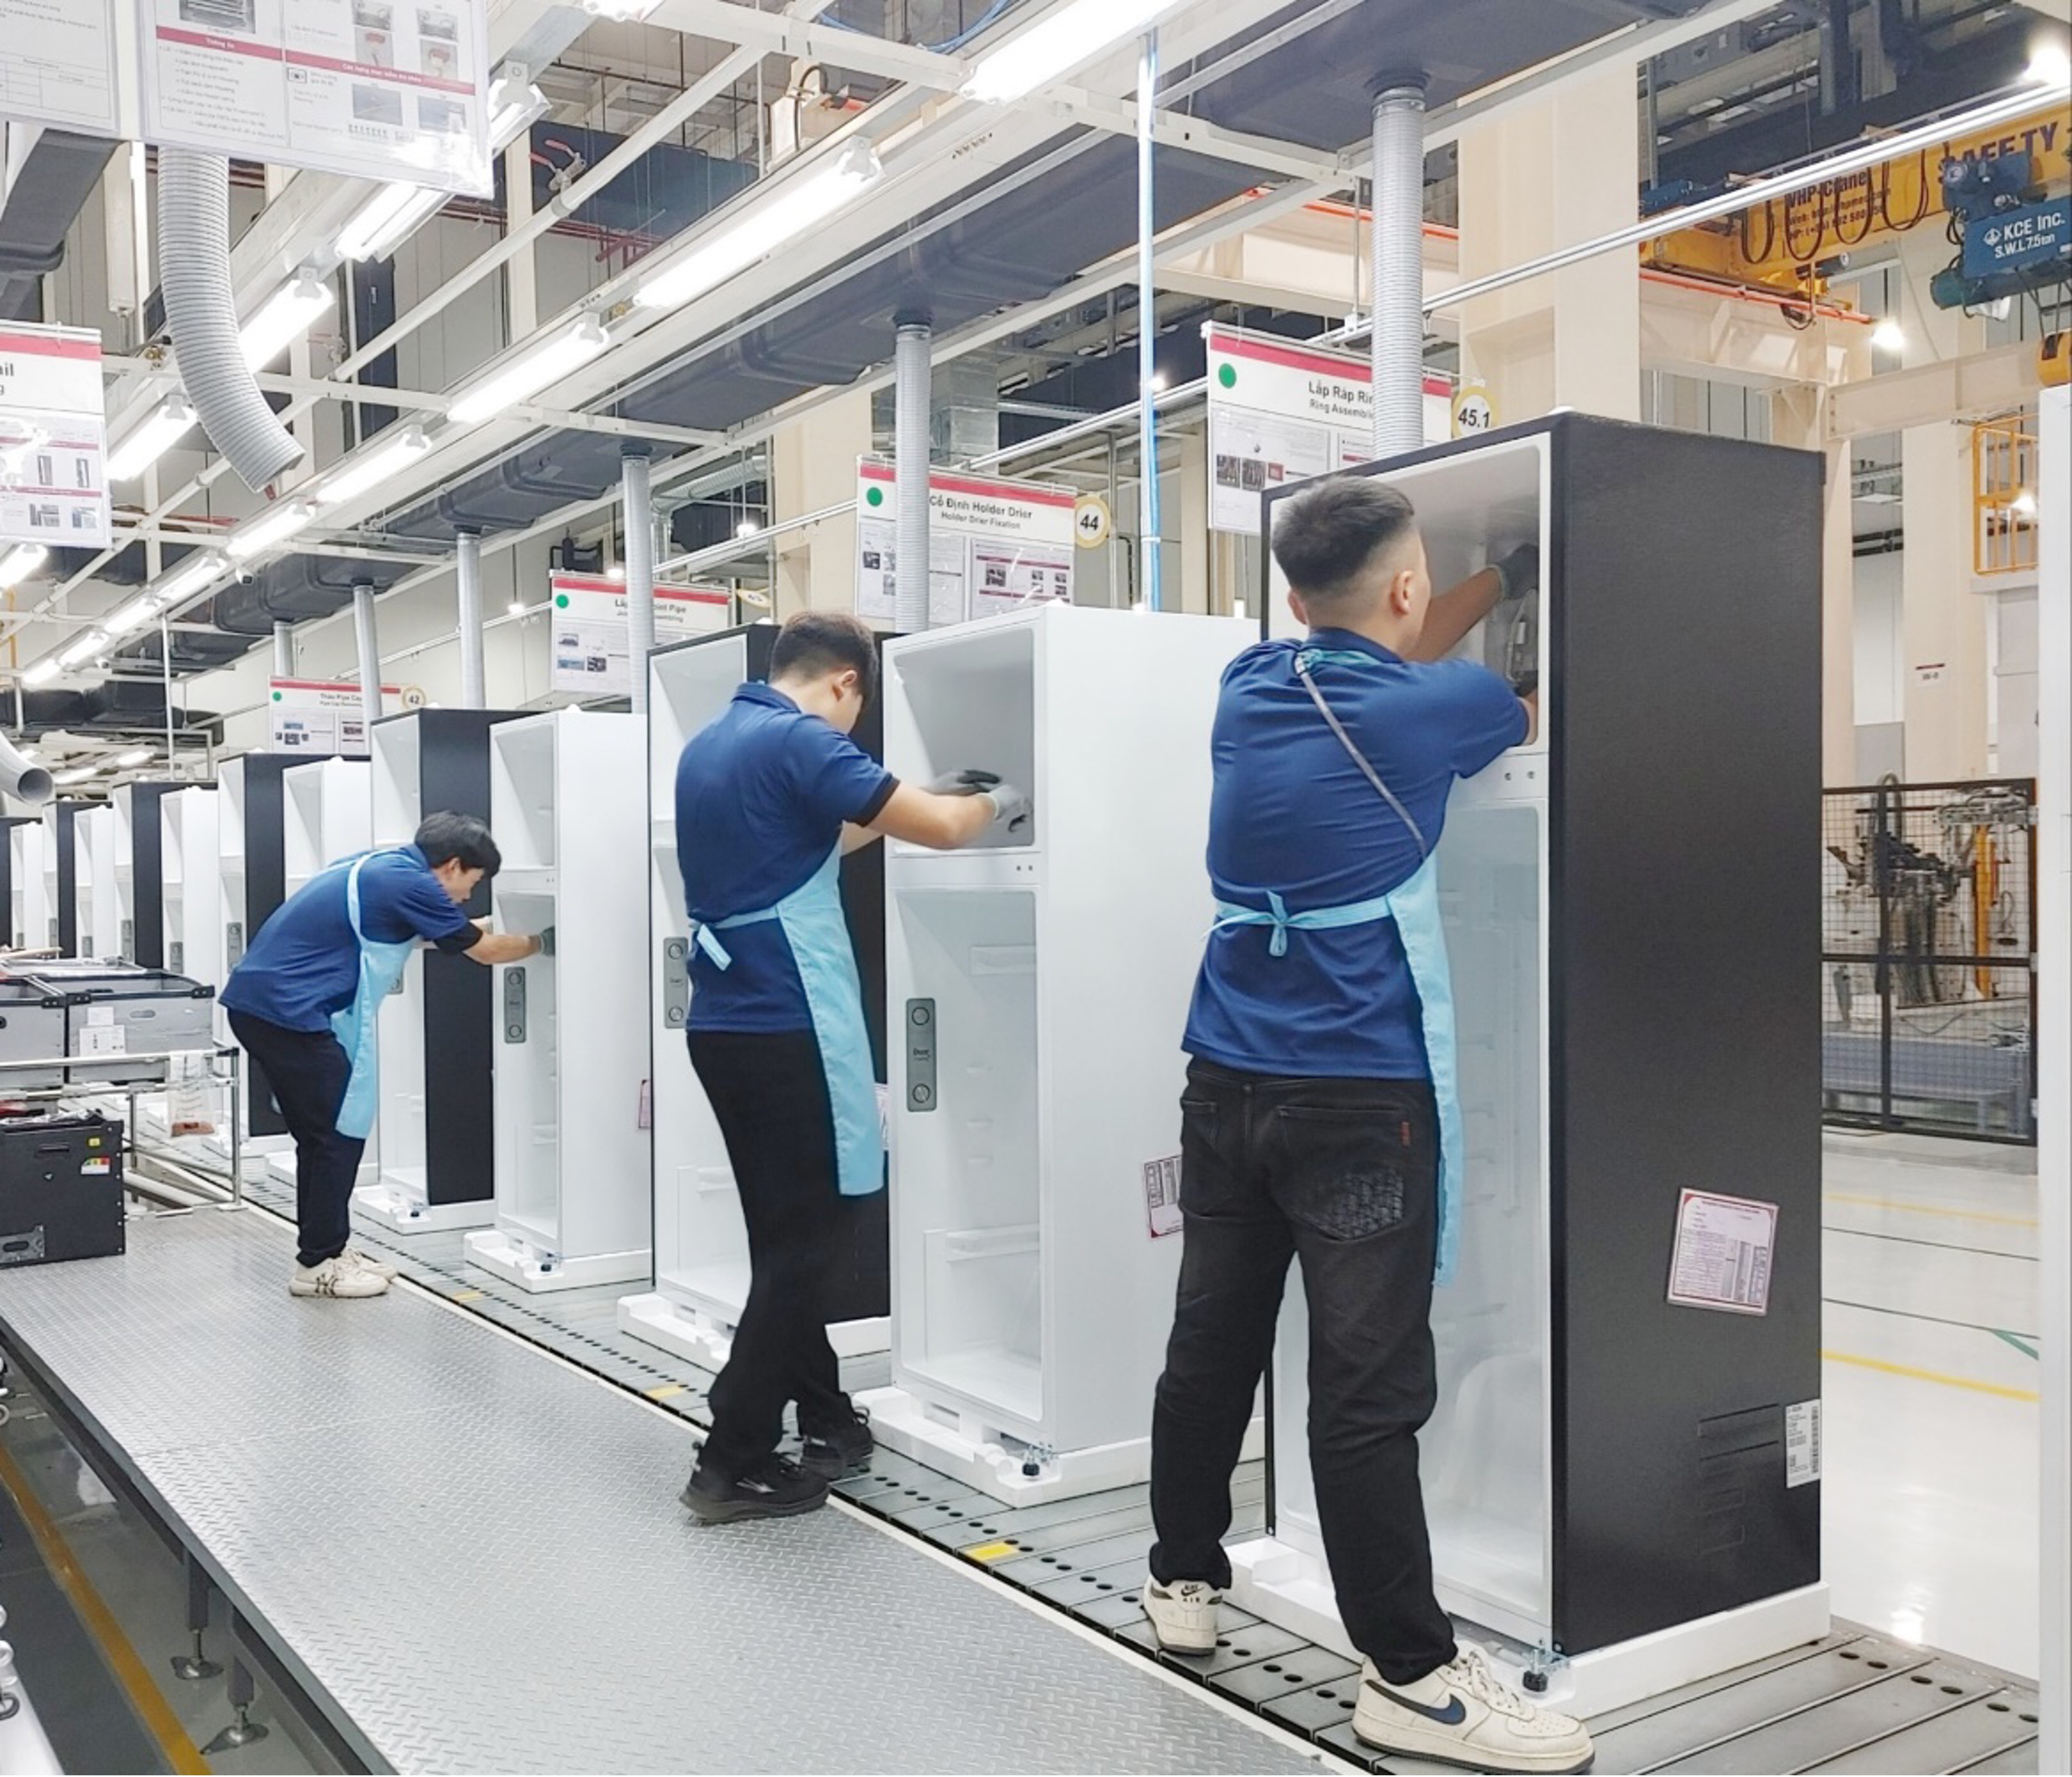 Tủ lạnh LG sản xuất tại Việt Nam đáp ứng kỳ vọng của người dùng - ảnh 1